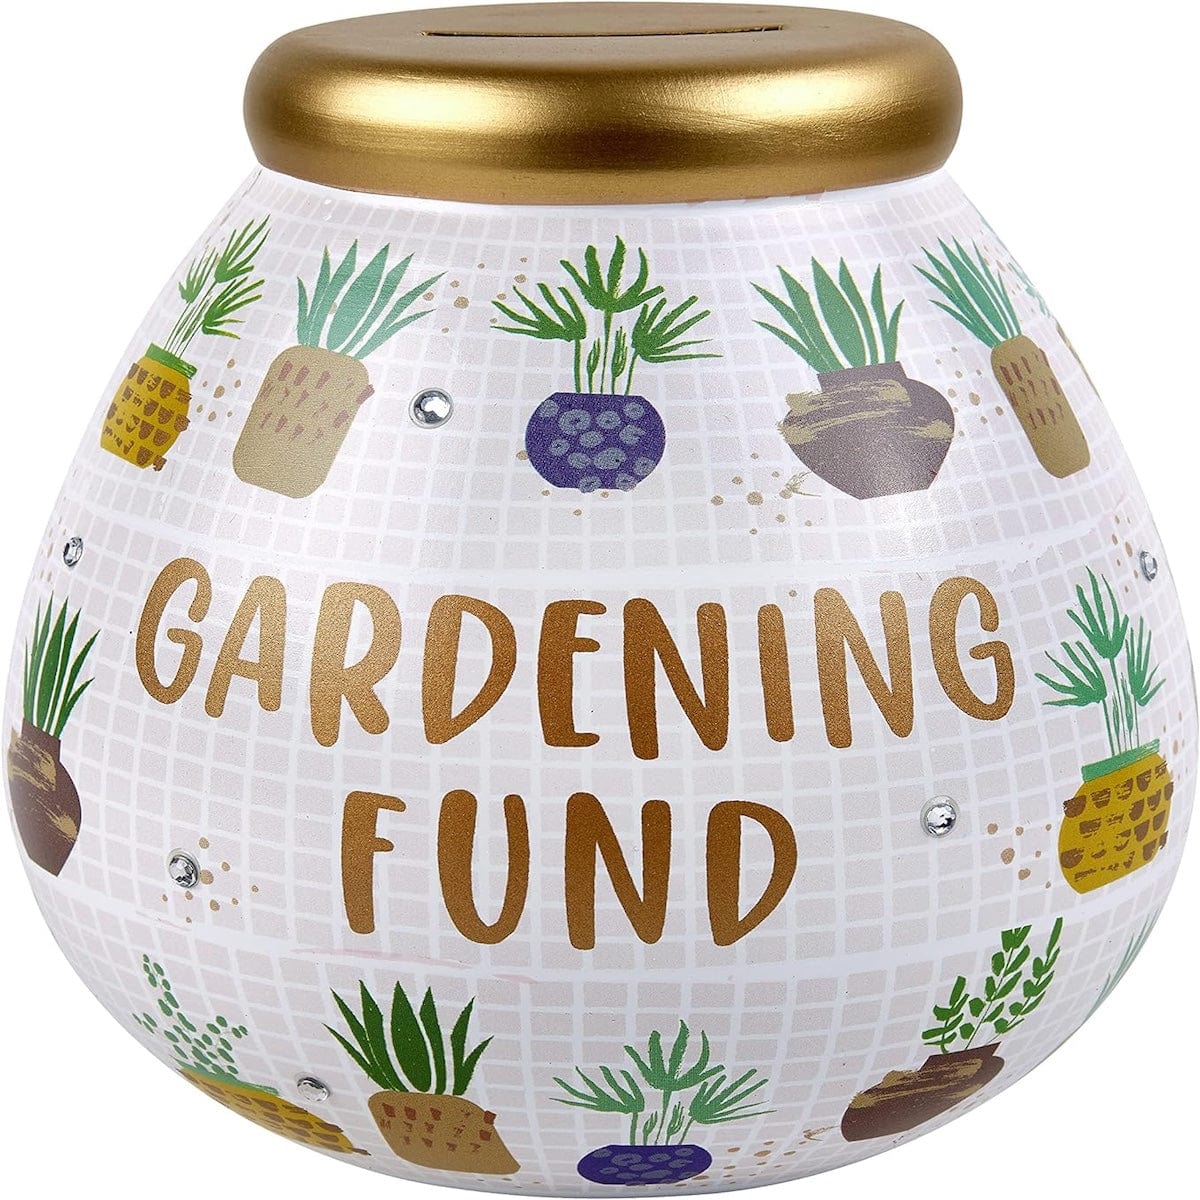 Joe Davies Money Pot Gardening Fund Breakable Pot of Dreams